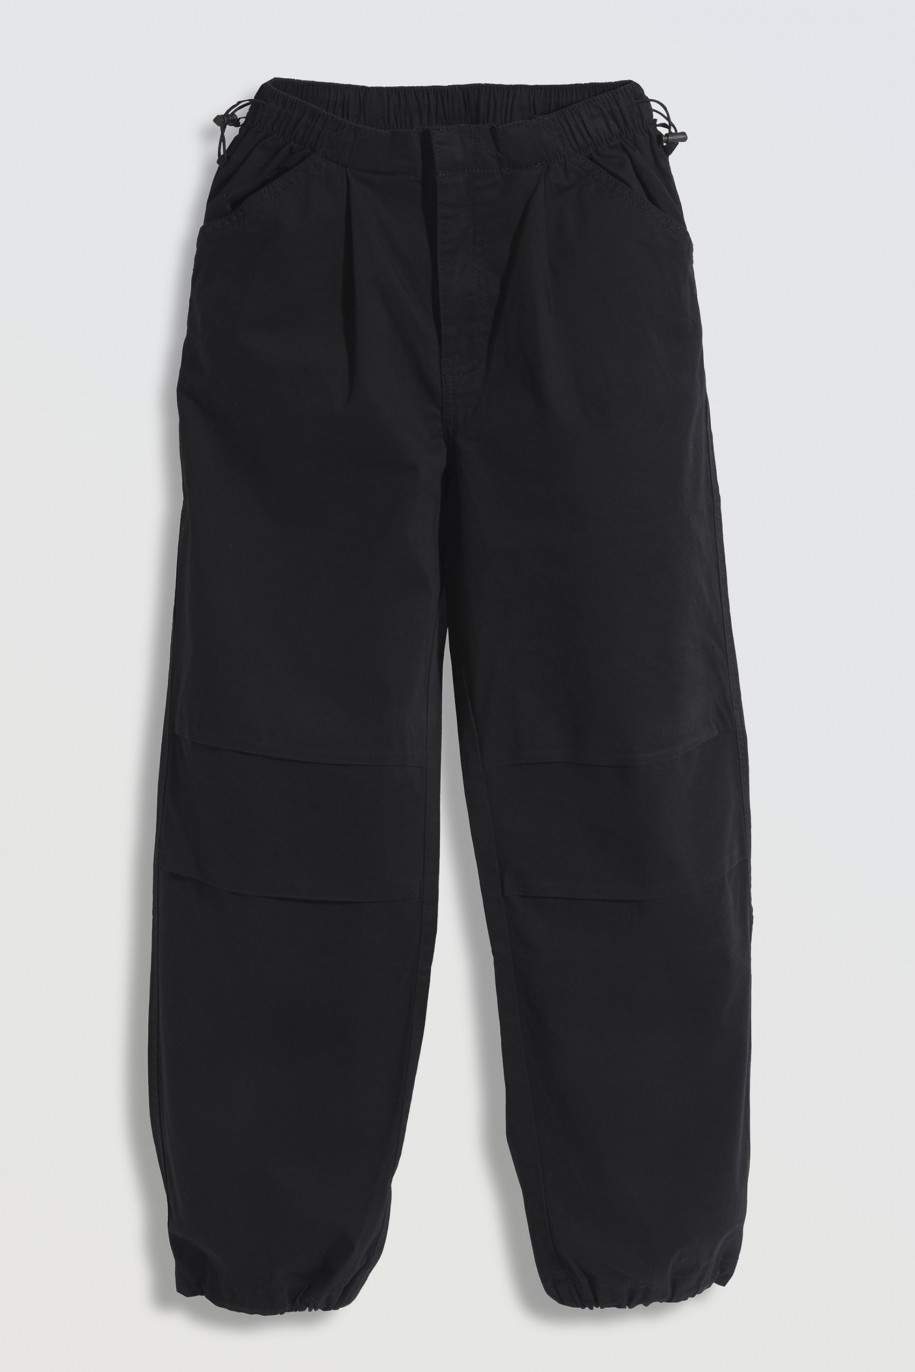 Czarne spodnie typu parachute z zaszewkami na nogawkach - 46262